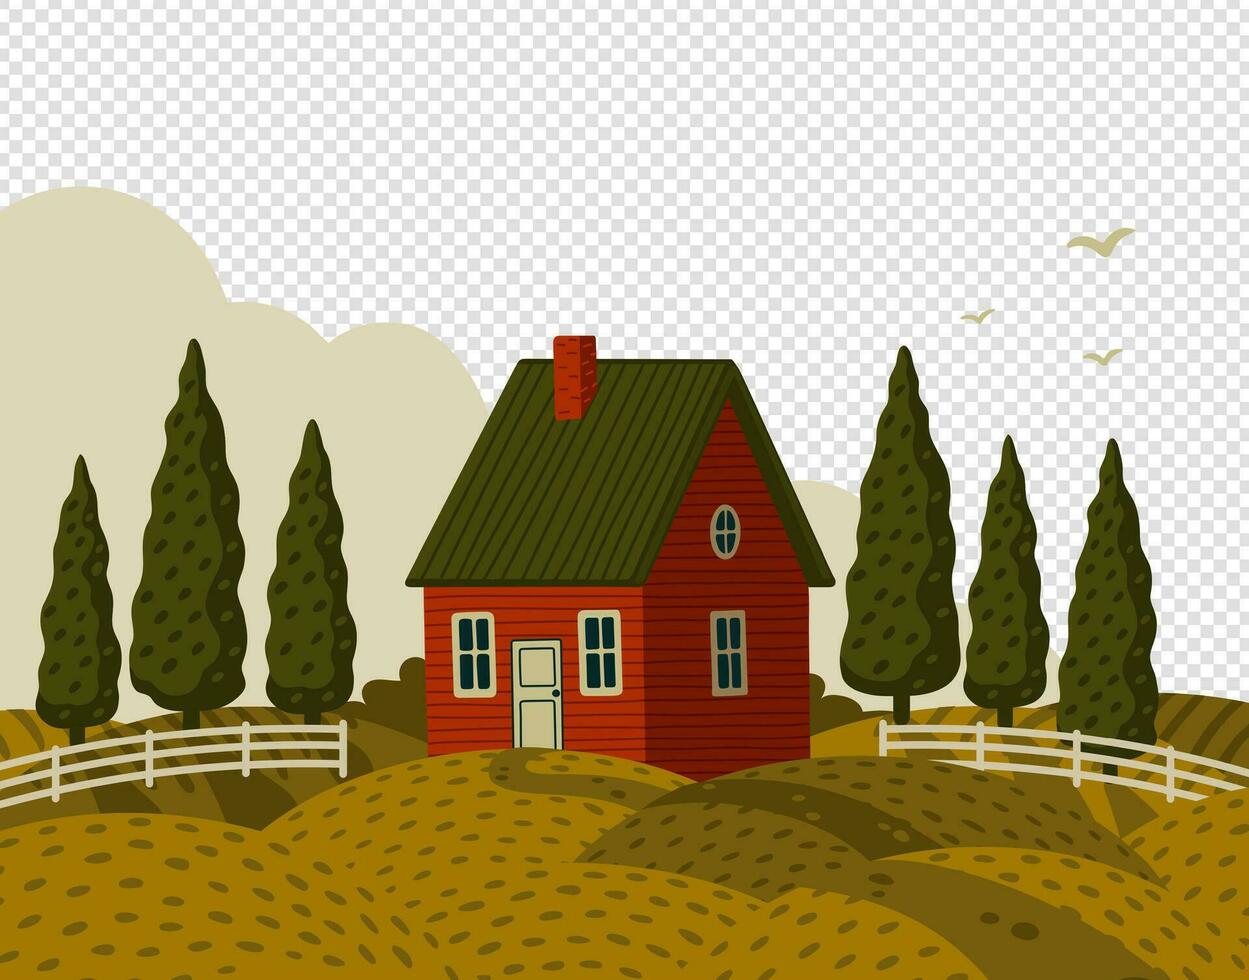 village paysage. rural paysage avec rouge ferme maison dans rustique style sur vert champ avec cyprès. vecteur